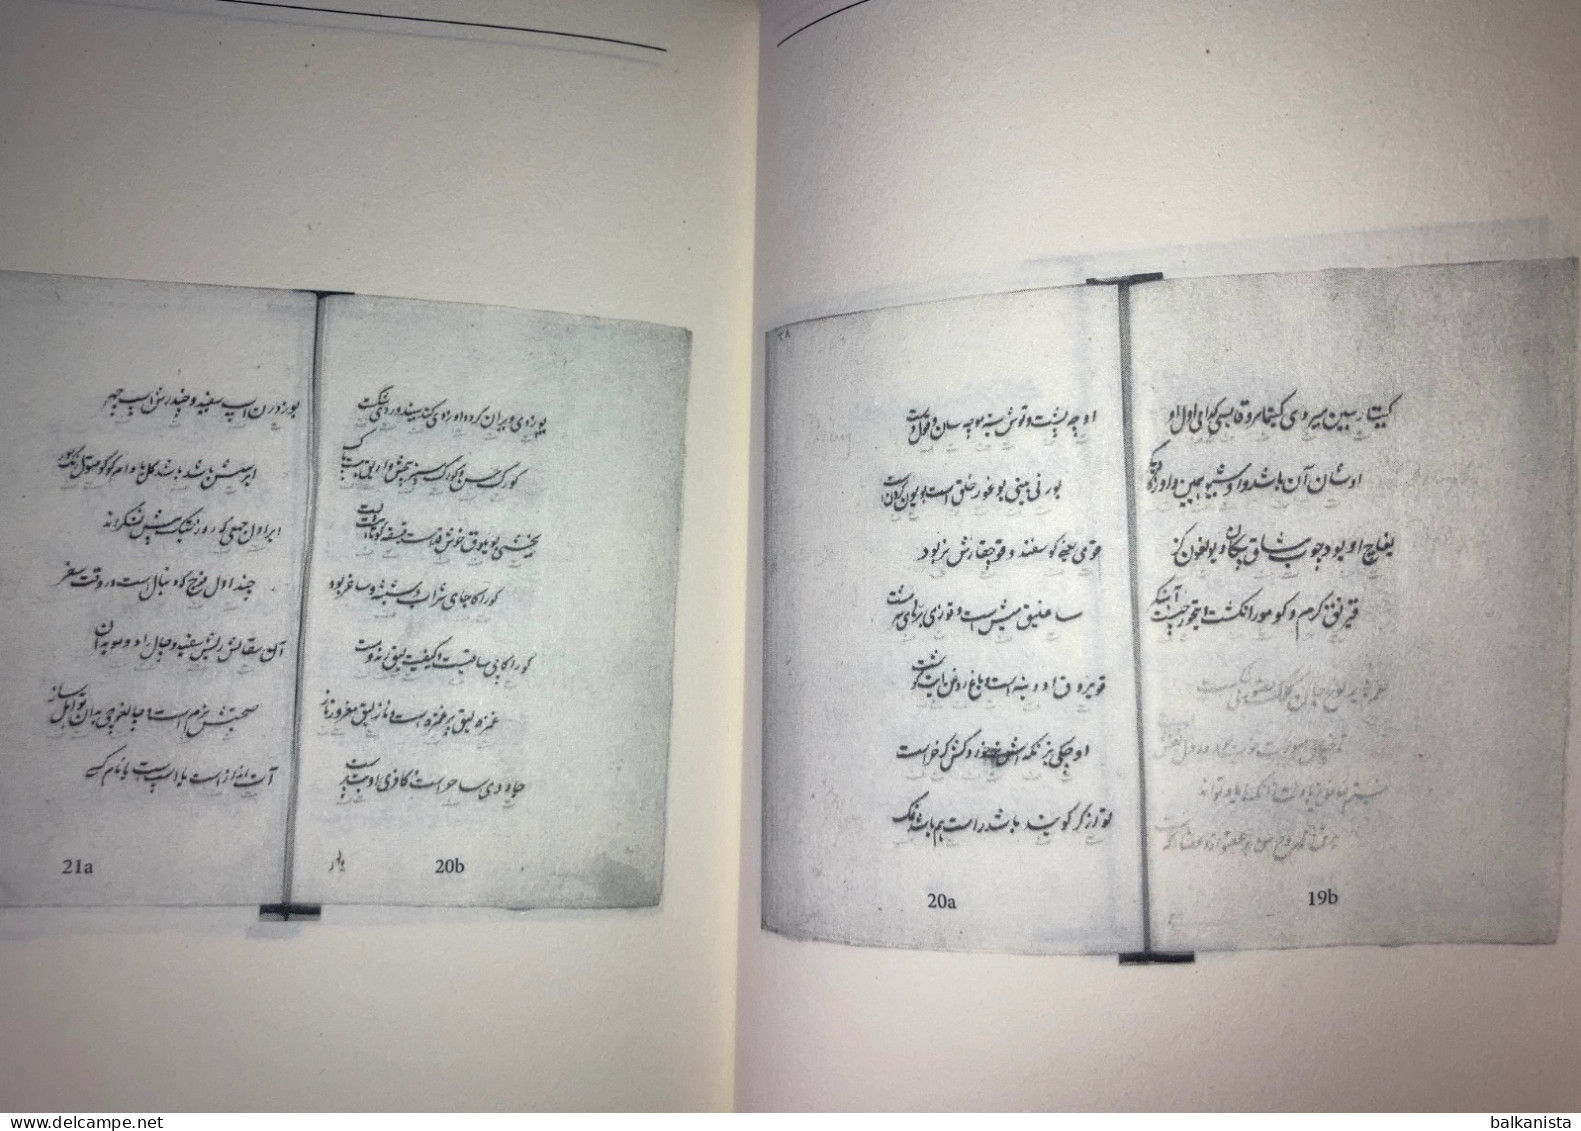 Nisab-i Turki - Nisab-i Türki-i Turan  - Chagatai Persian Dictionary - Dictionaries